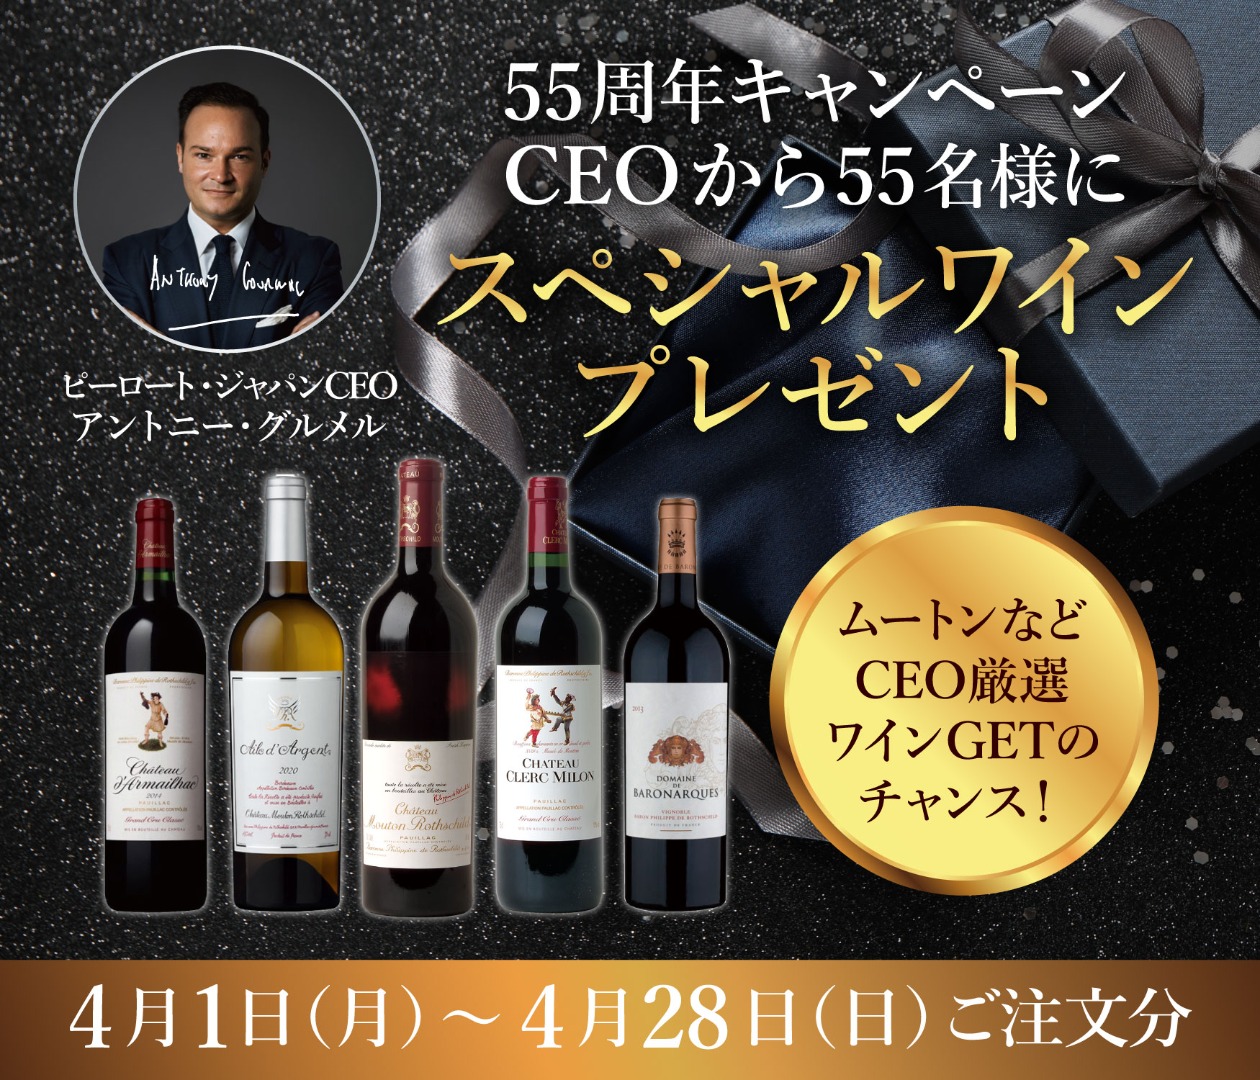 ピーロート・ジャパン55周年キャンペーン CEOからスペシャルワインプレゼント